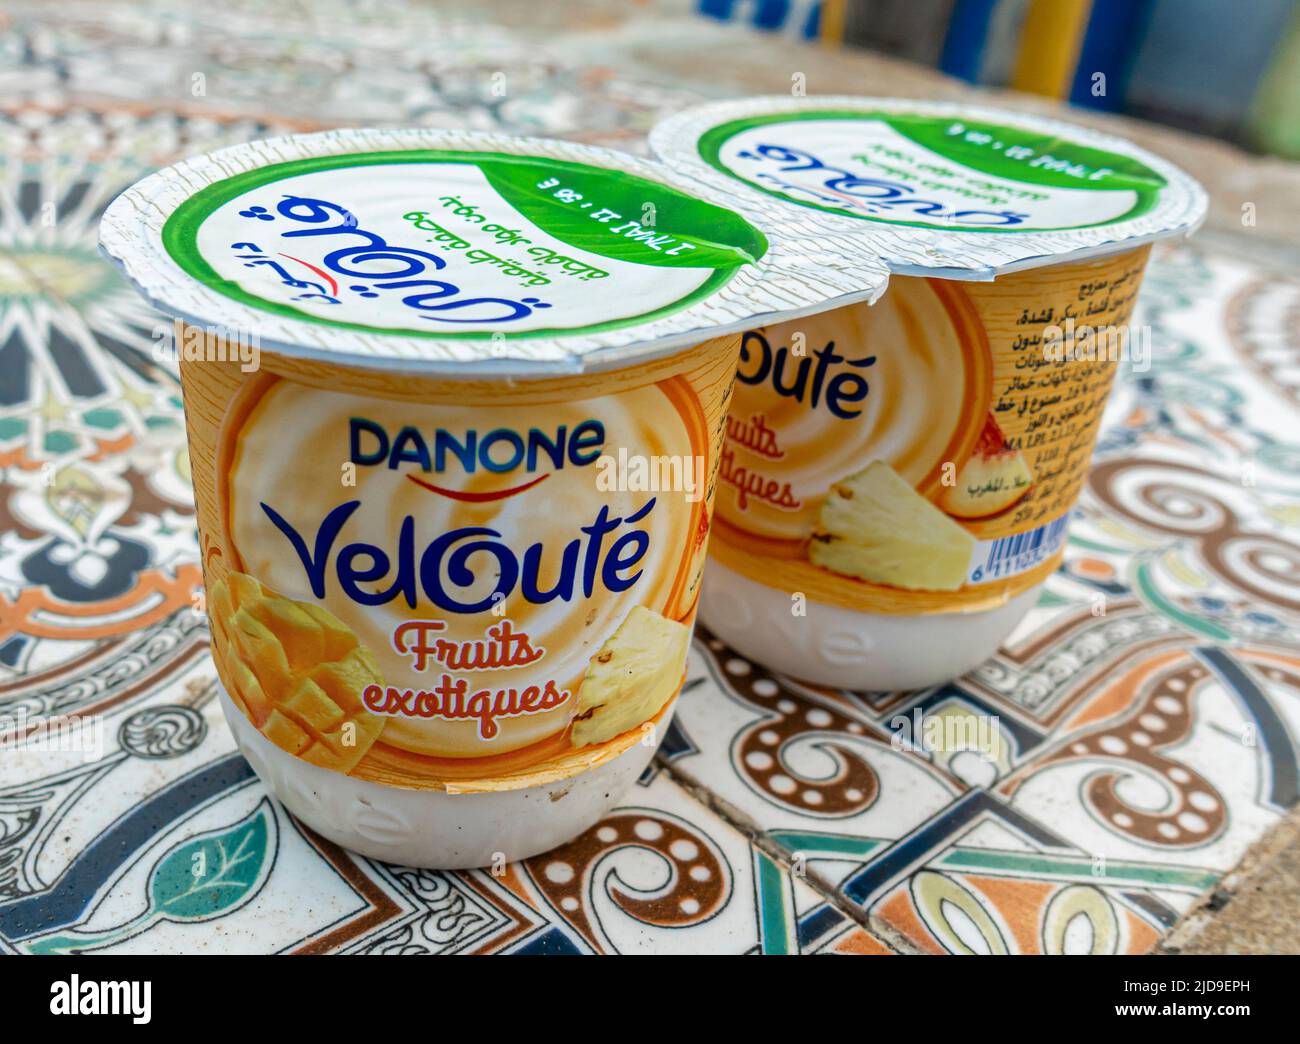 Danone Velouté exotische Früchte schmecken in einer kleinen Packung - Danon Joghurt  Joghurt Joghurts. Hergestellt für den Markt in Marokko Stockfotografie -  Alamy